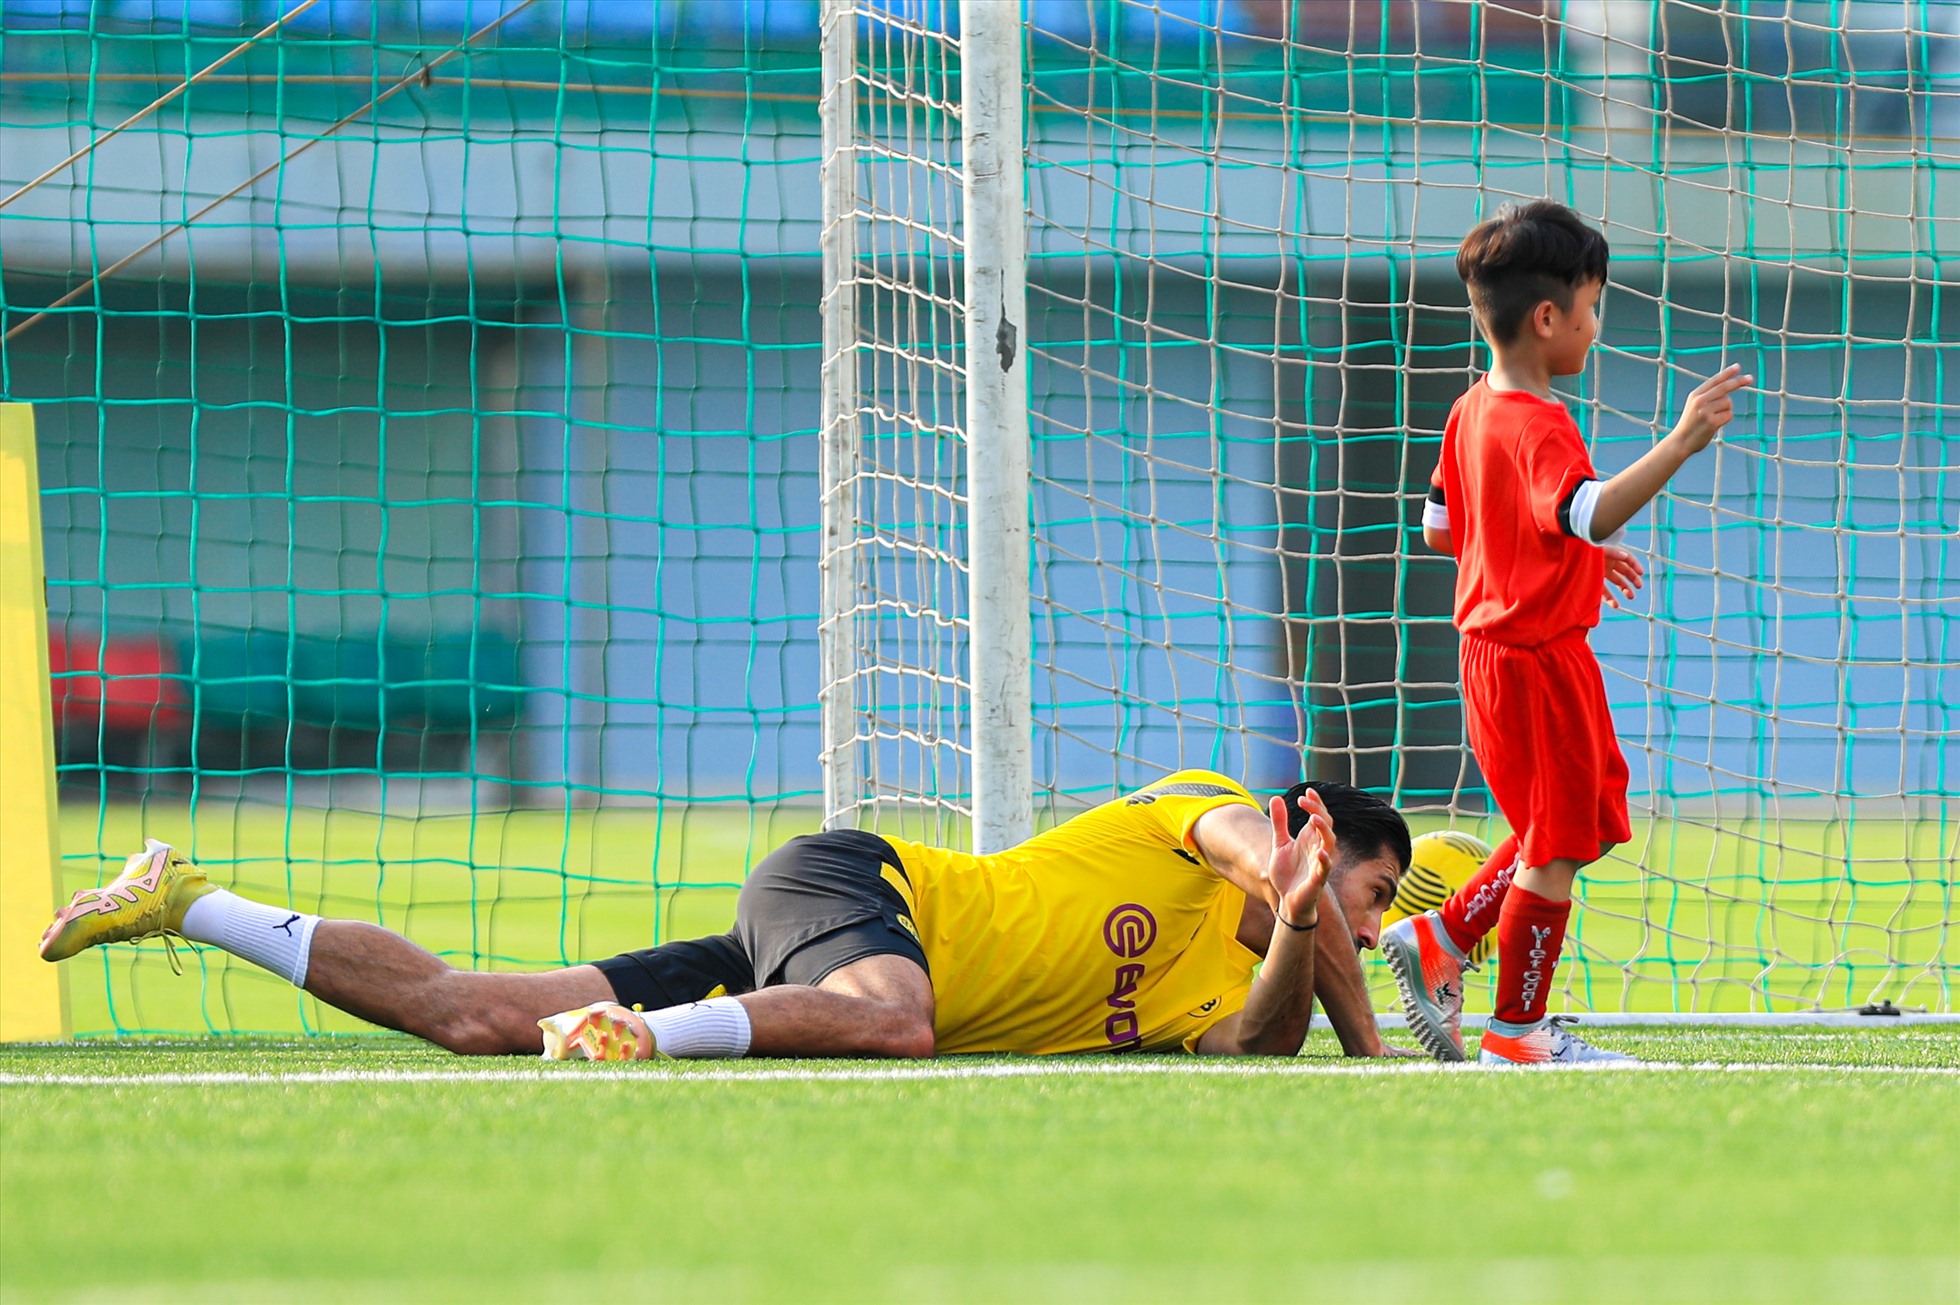 Trận đấu chỉ kéo dài khoảng 10 phút kết thúc với tỉ số 4-0 nghiêng về các cầu thủ nhí Việt Nam.